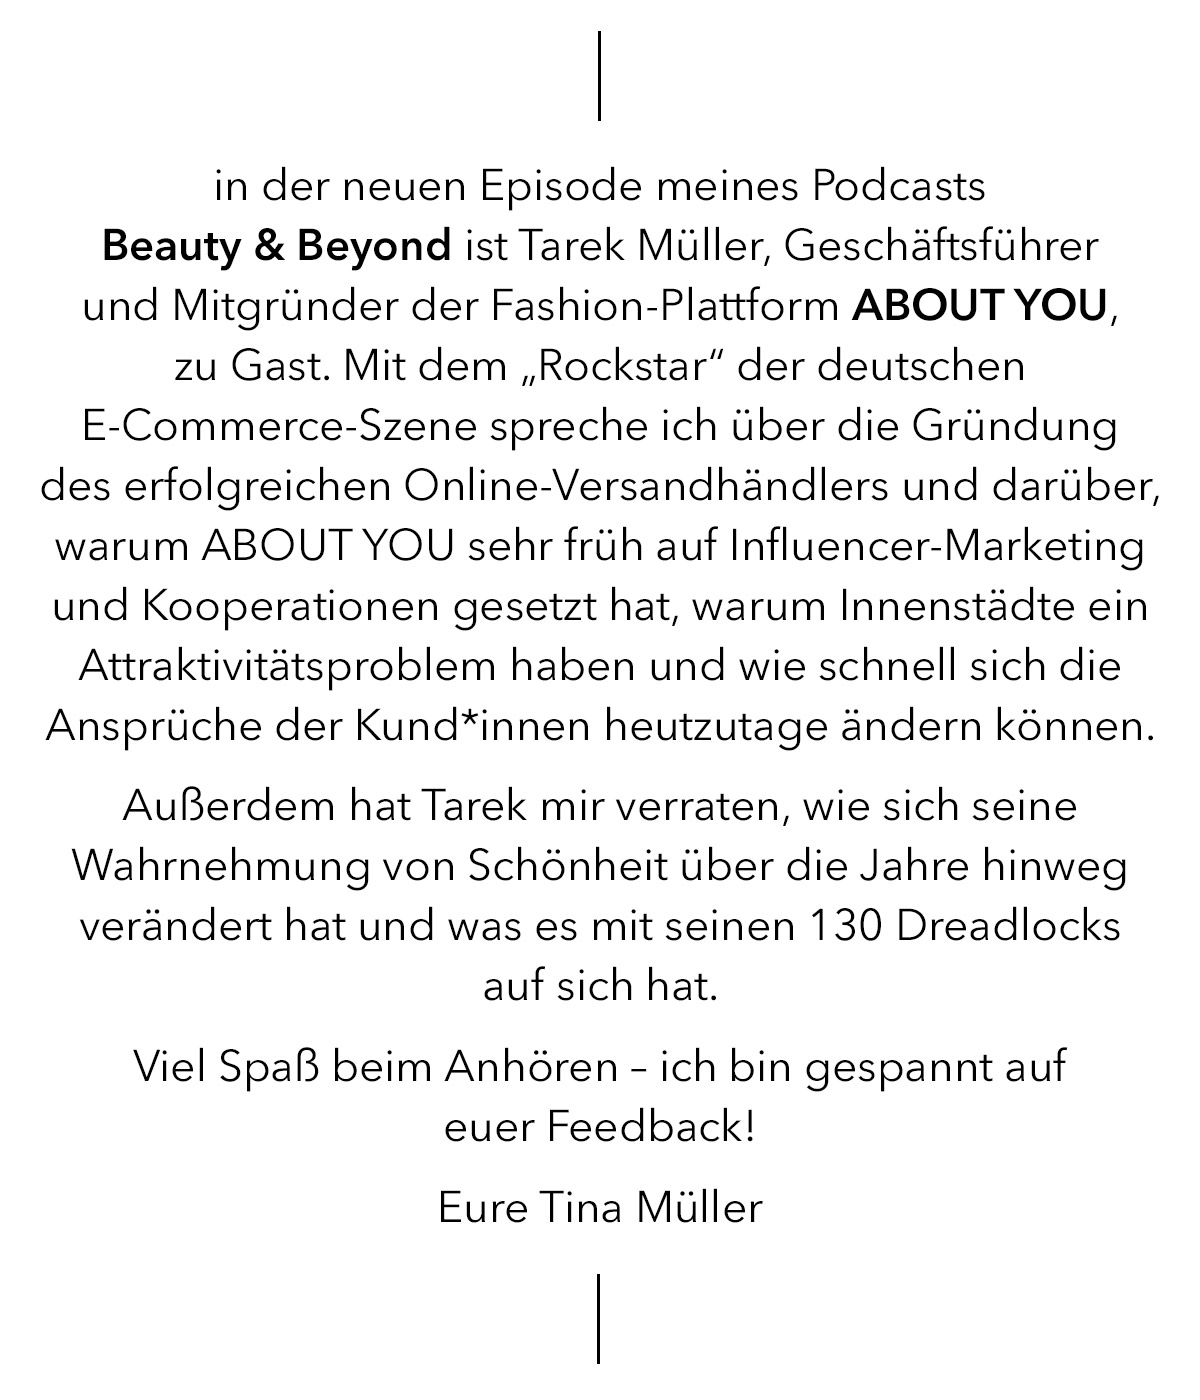 Der neue Podcast mit Tina Müller